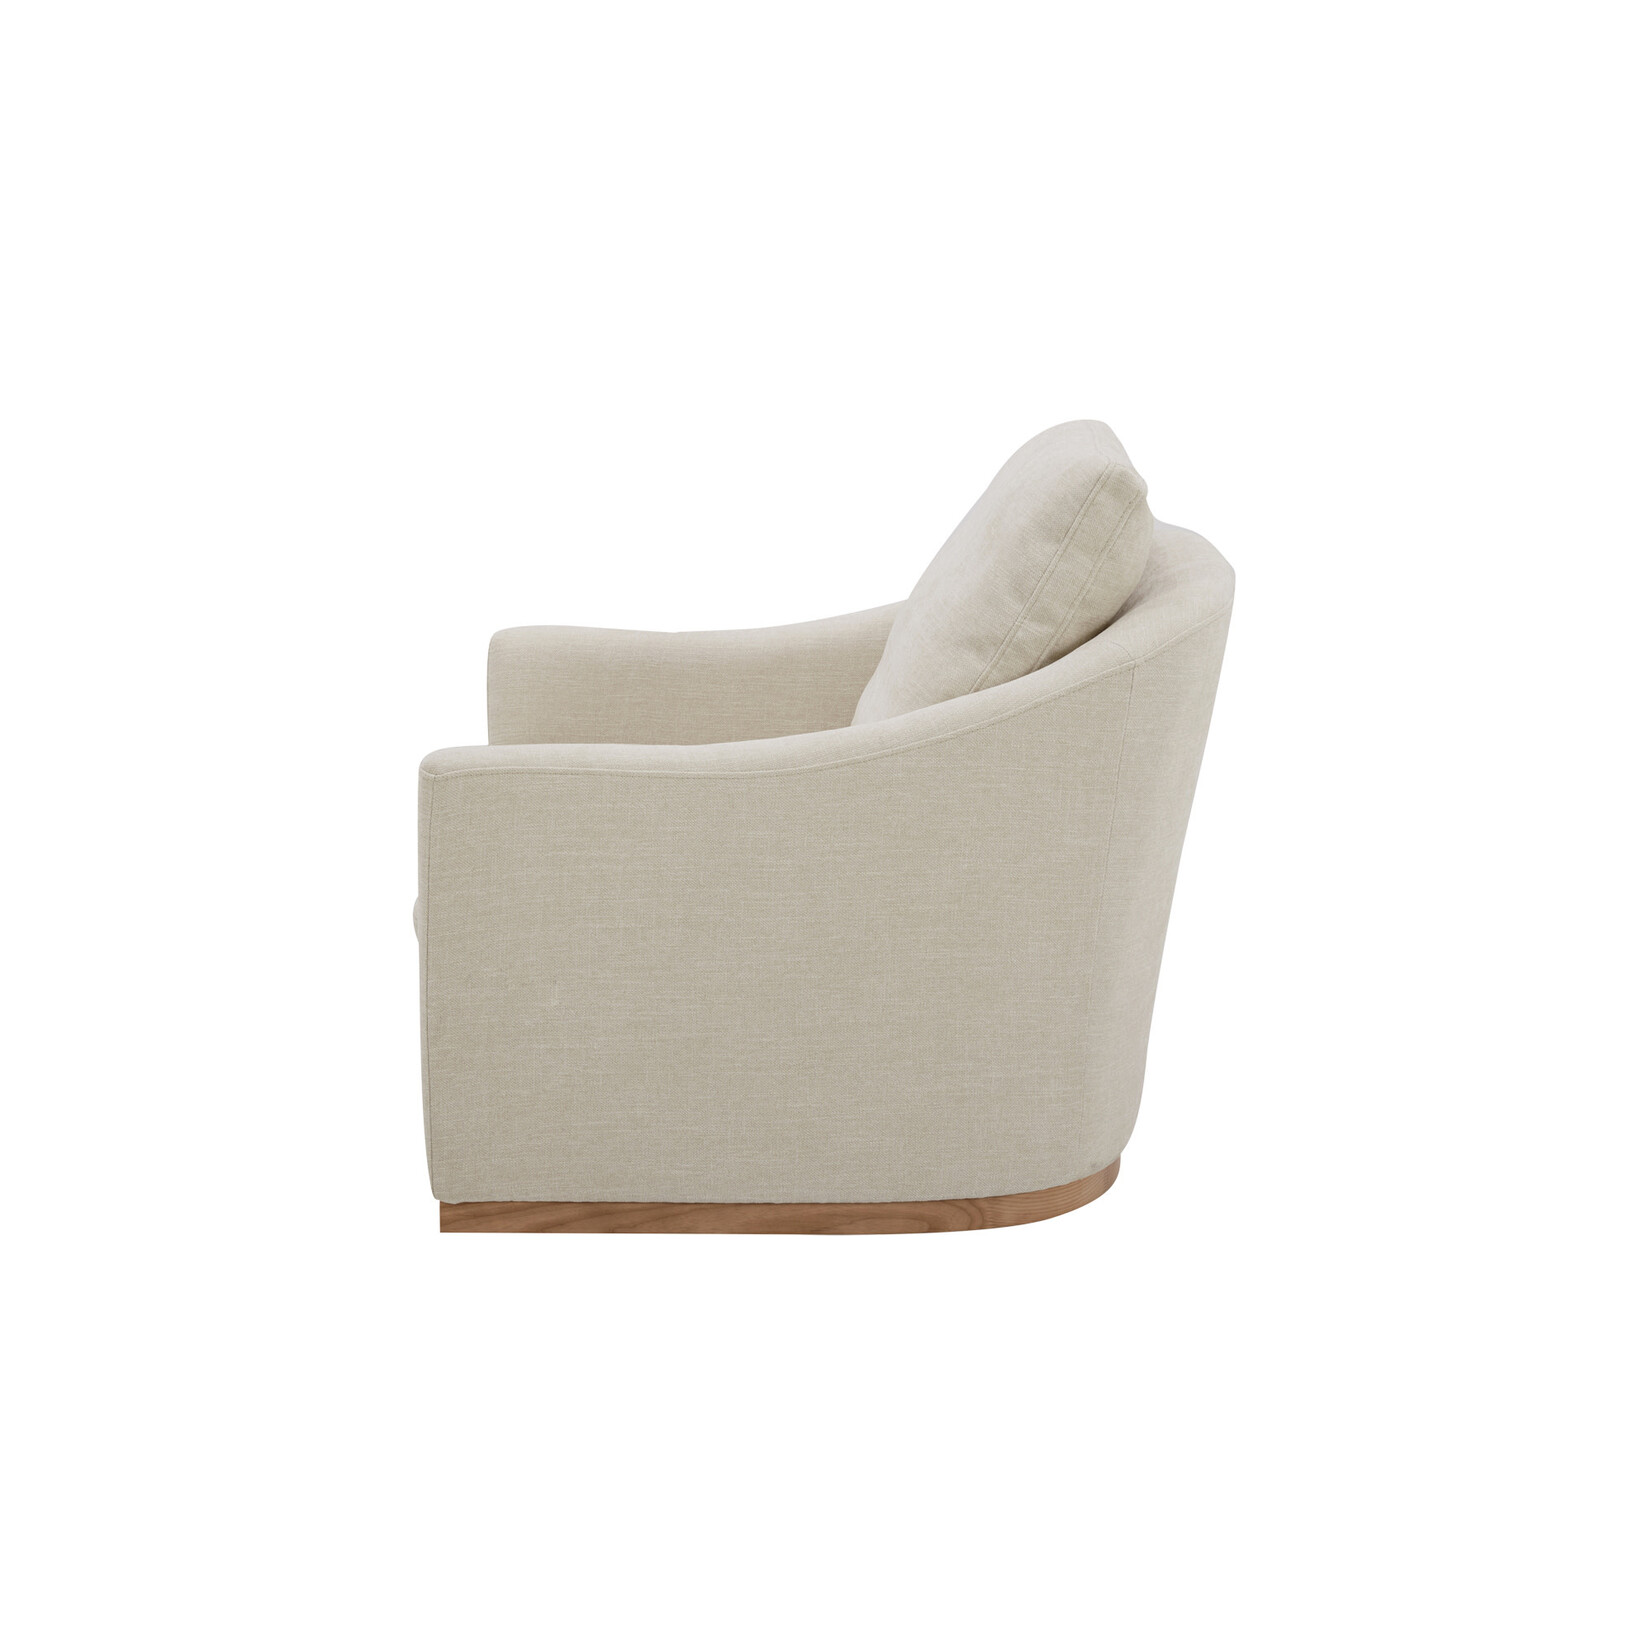 Linden Swivel Chair - Soft Beige